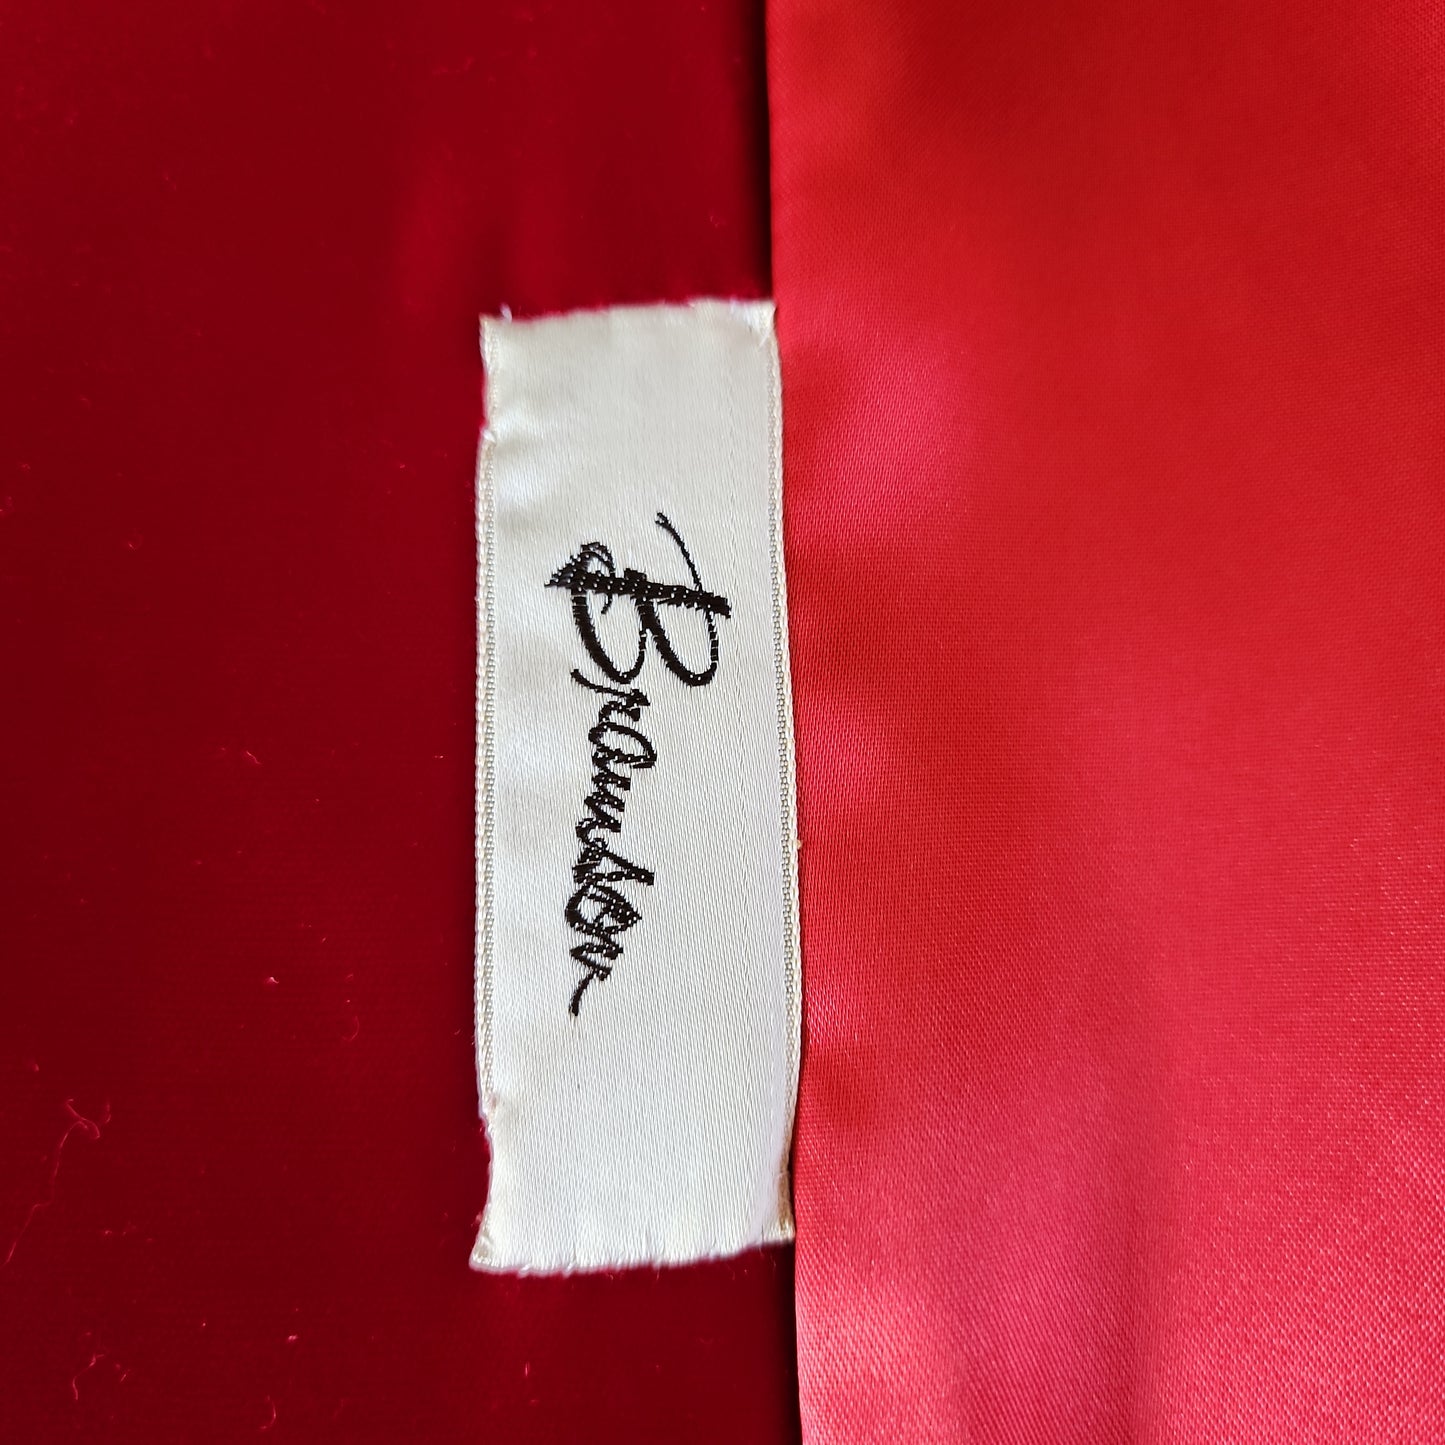 60s Red Velvet Evening Coat Rhinestone Buttons Bramson